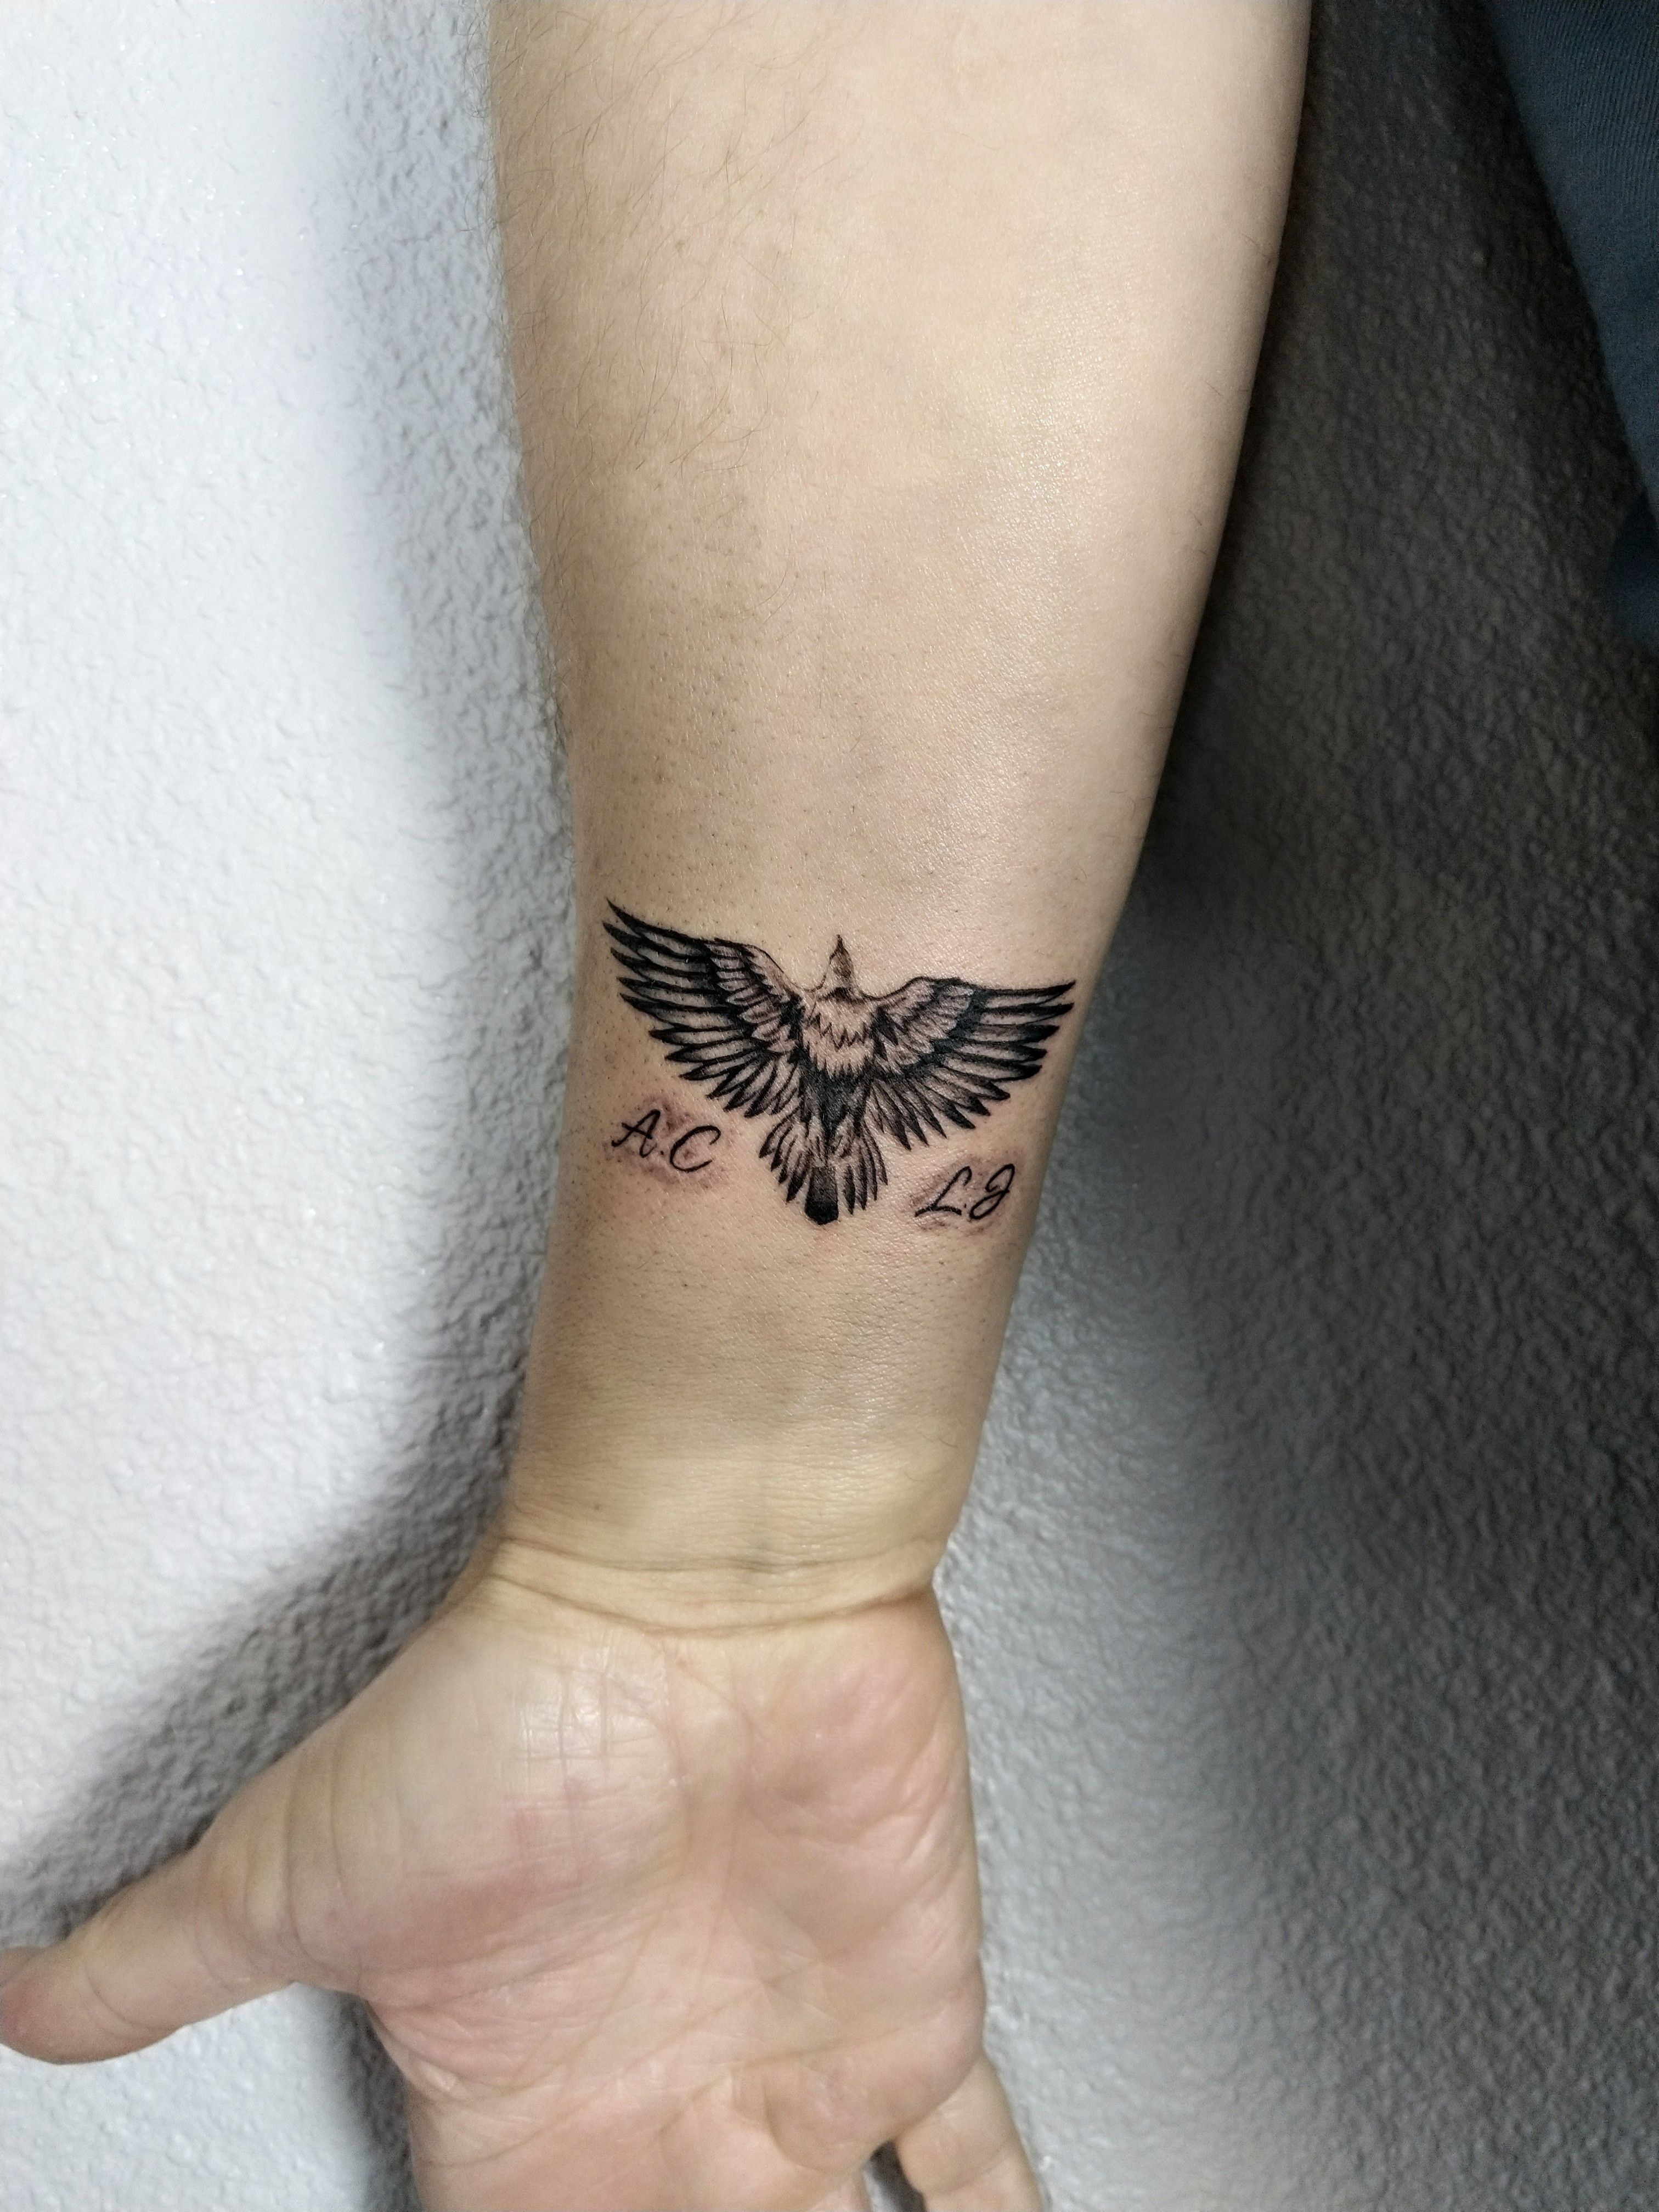 Clear Meaningful Small Eagle Tattoo - Small Eagle Tattoos - Small Tattoos -  MomCanvas